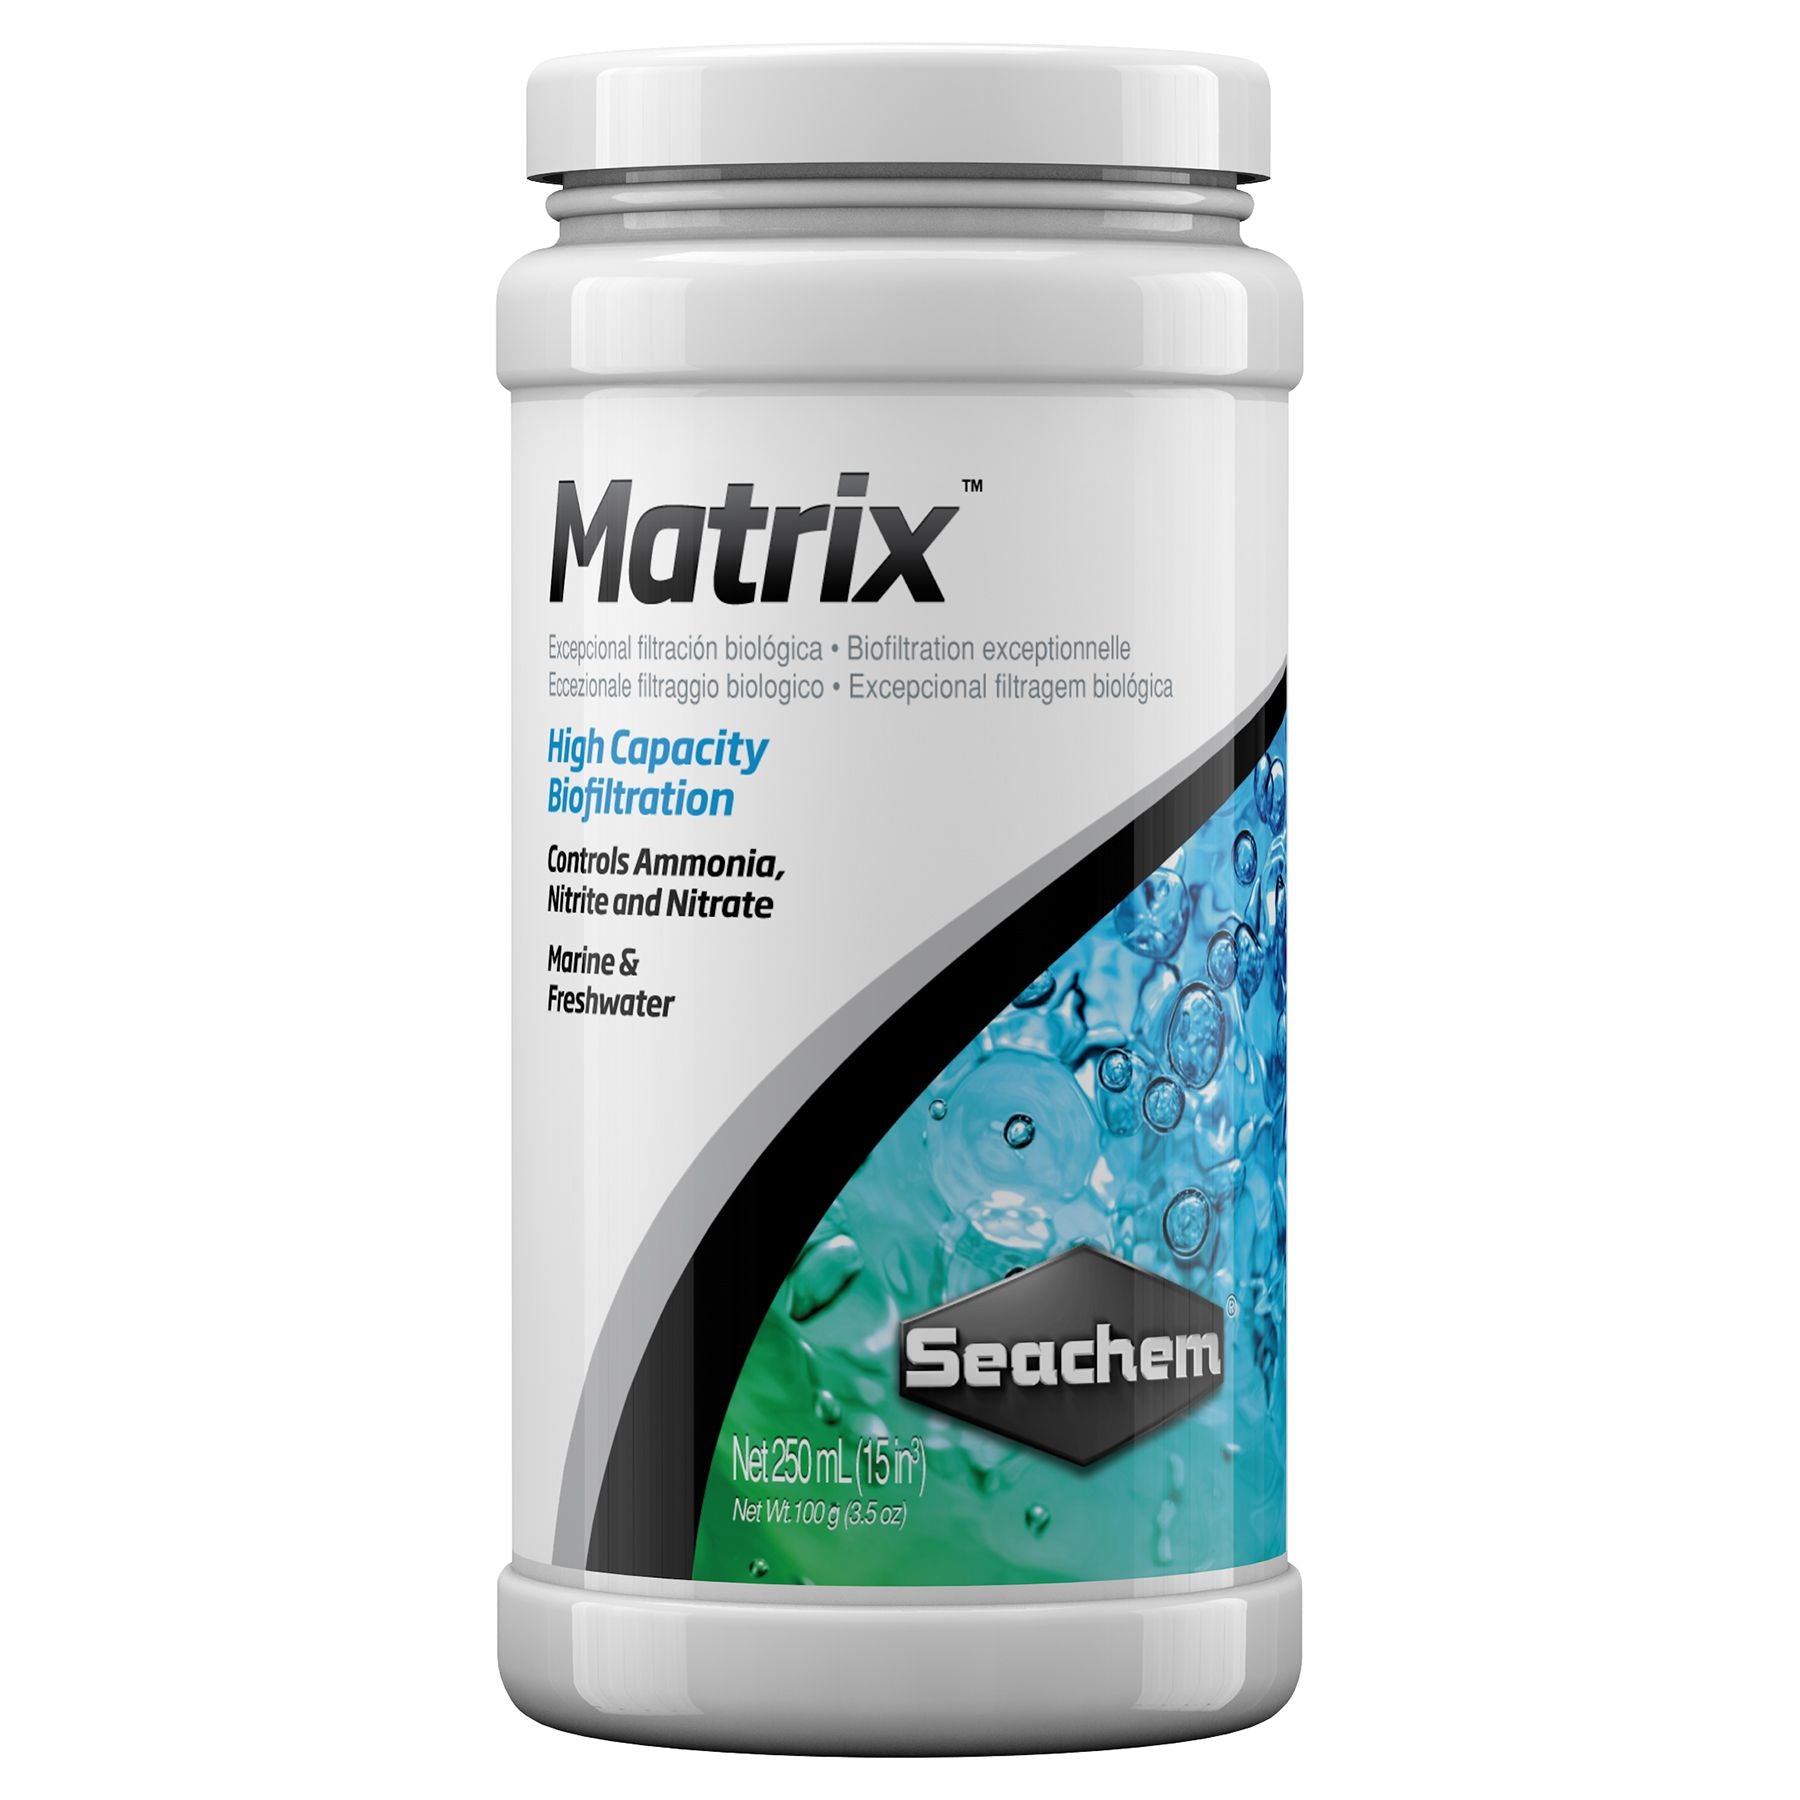 Seachem Matrix - Aquatia